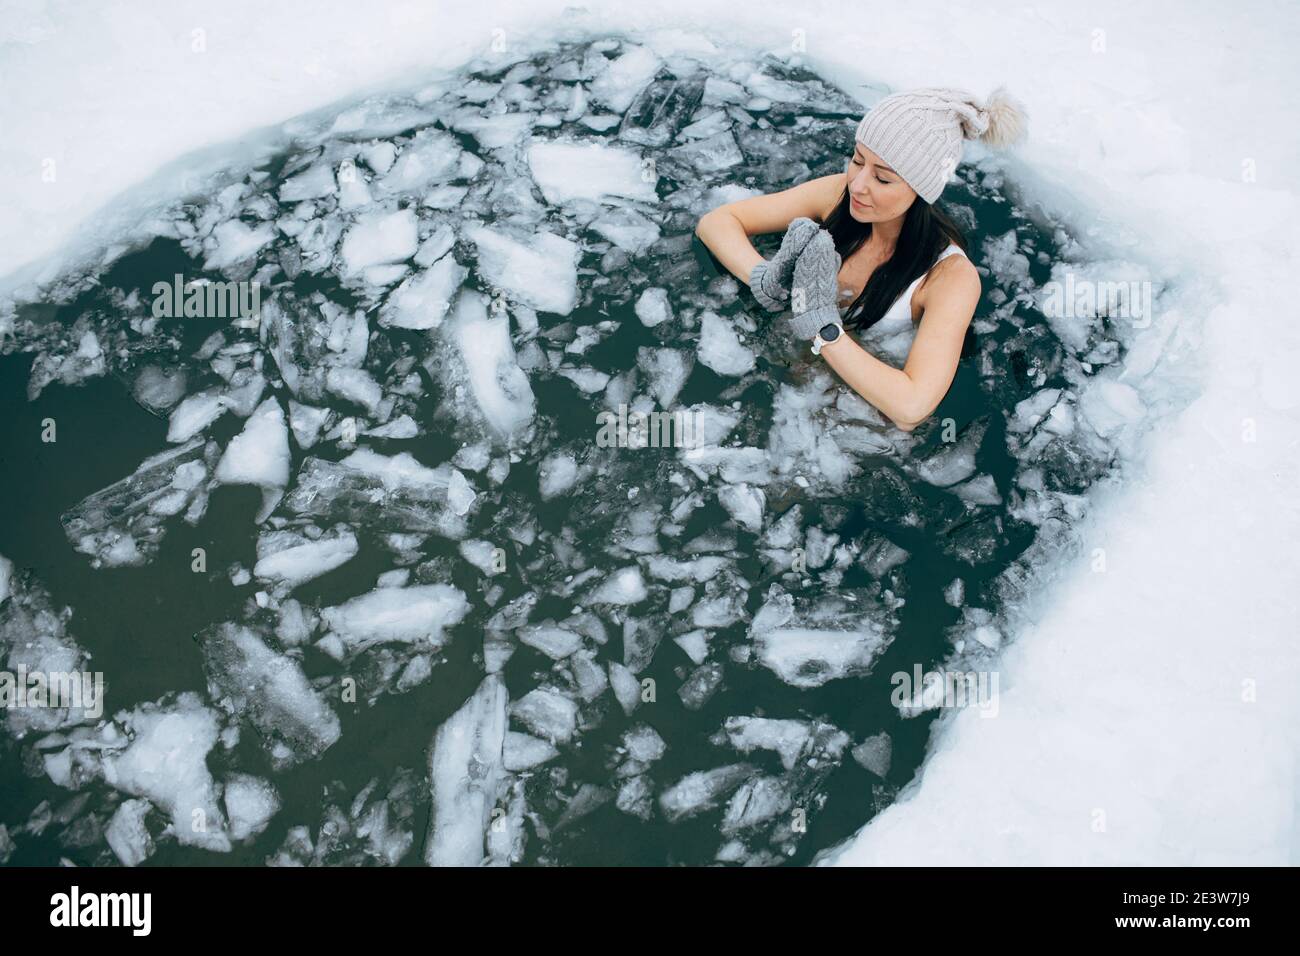 Schwimmen im Winter. Frau in gefrorenem See Eisloch. Wie man im kalten Wasser schwimmt. Schöne junge Frau in Zen-Meditation. Badekleidung mit Mütze und Handschuhen. Stockfoto